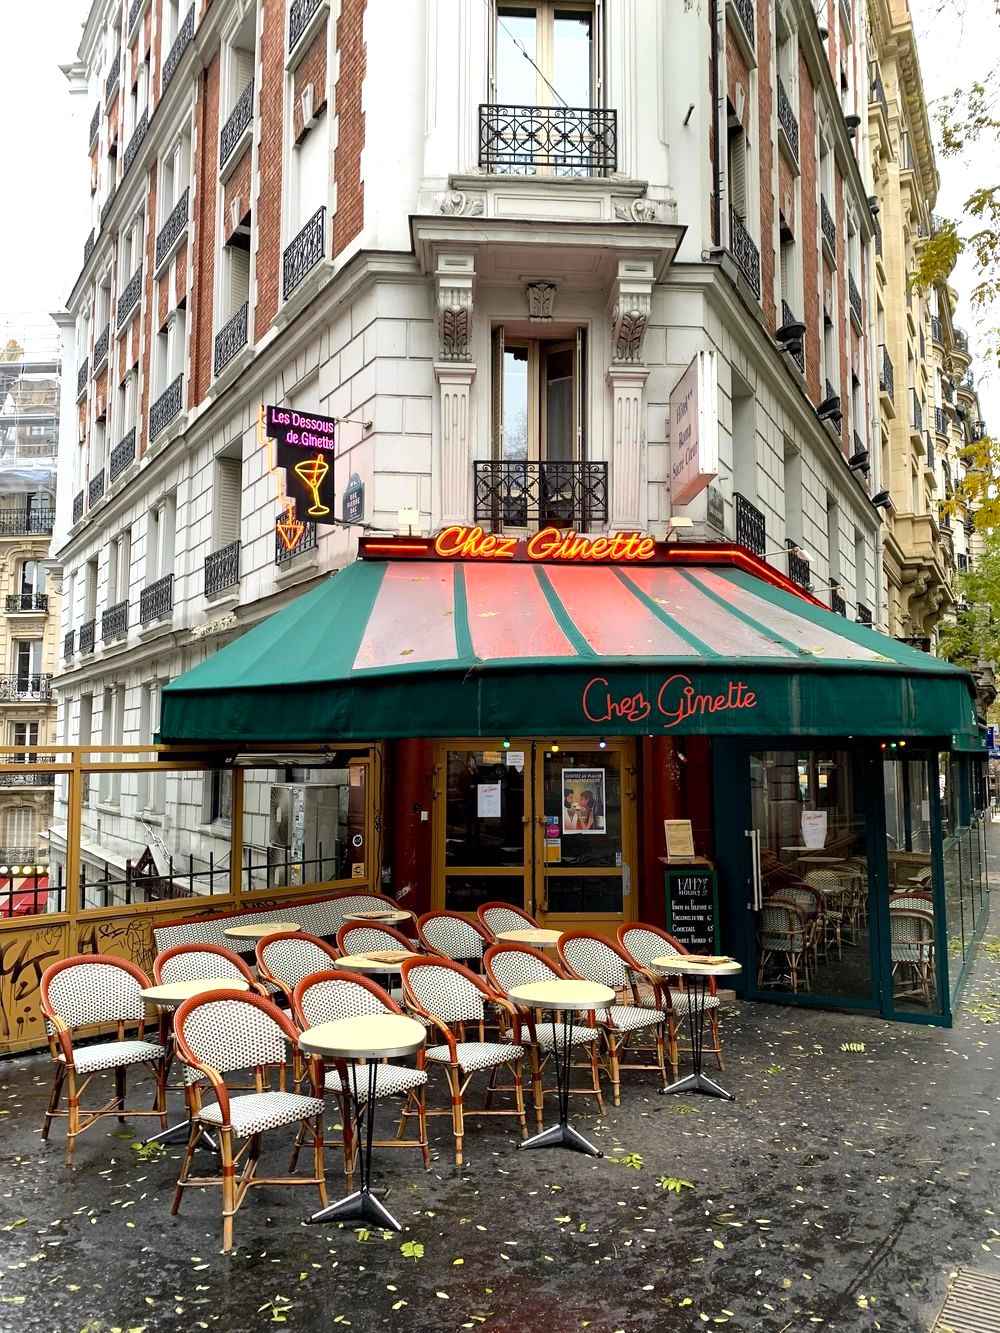 Paris cafe culture IMG_0130